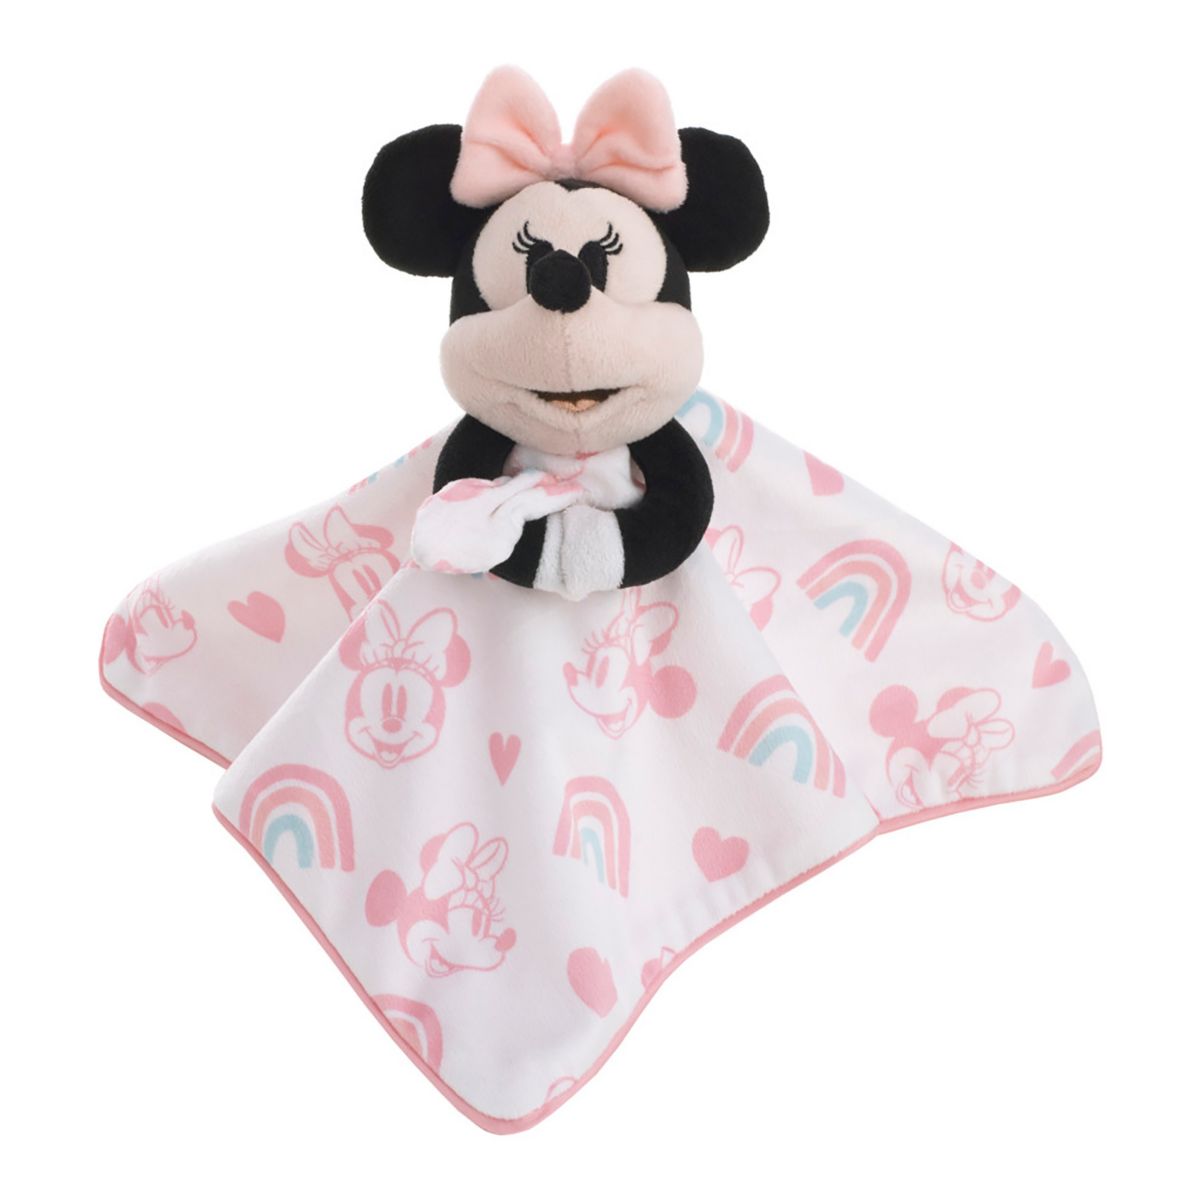 Милое защитное одеяло с изображением Минни Маус Диснея Disney